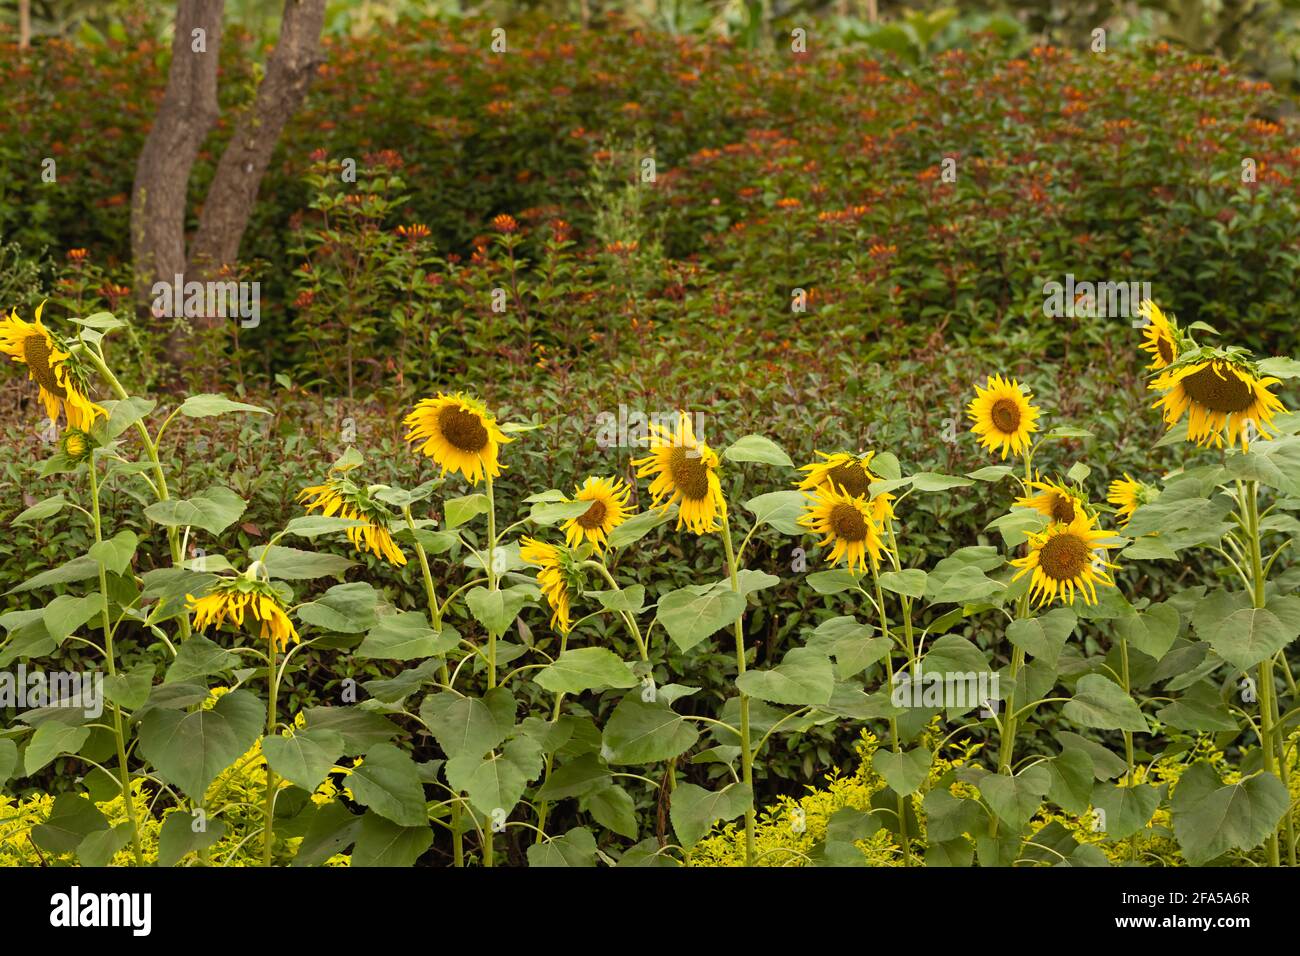 Blick auf die Sonnenblumenplantage mit Sonnenblumen, die in einer Reihe stehen Und blüht Stockfoto